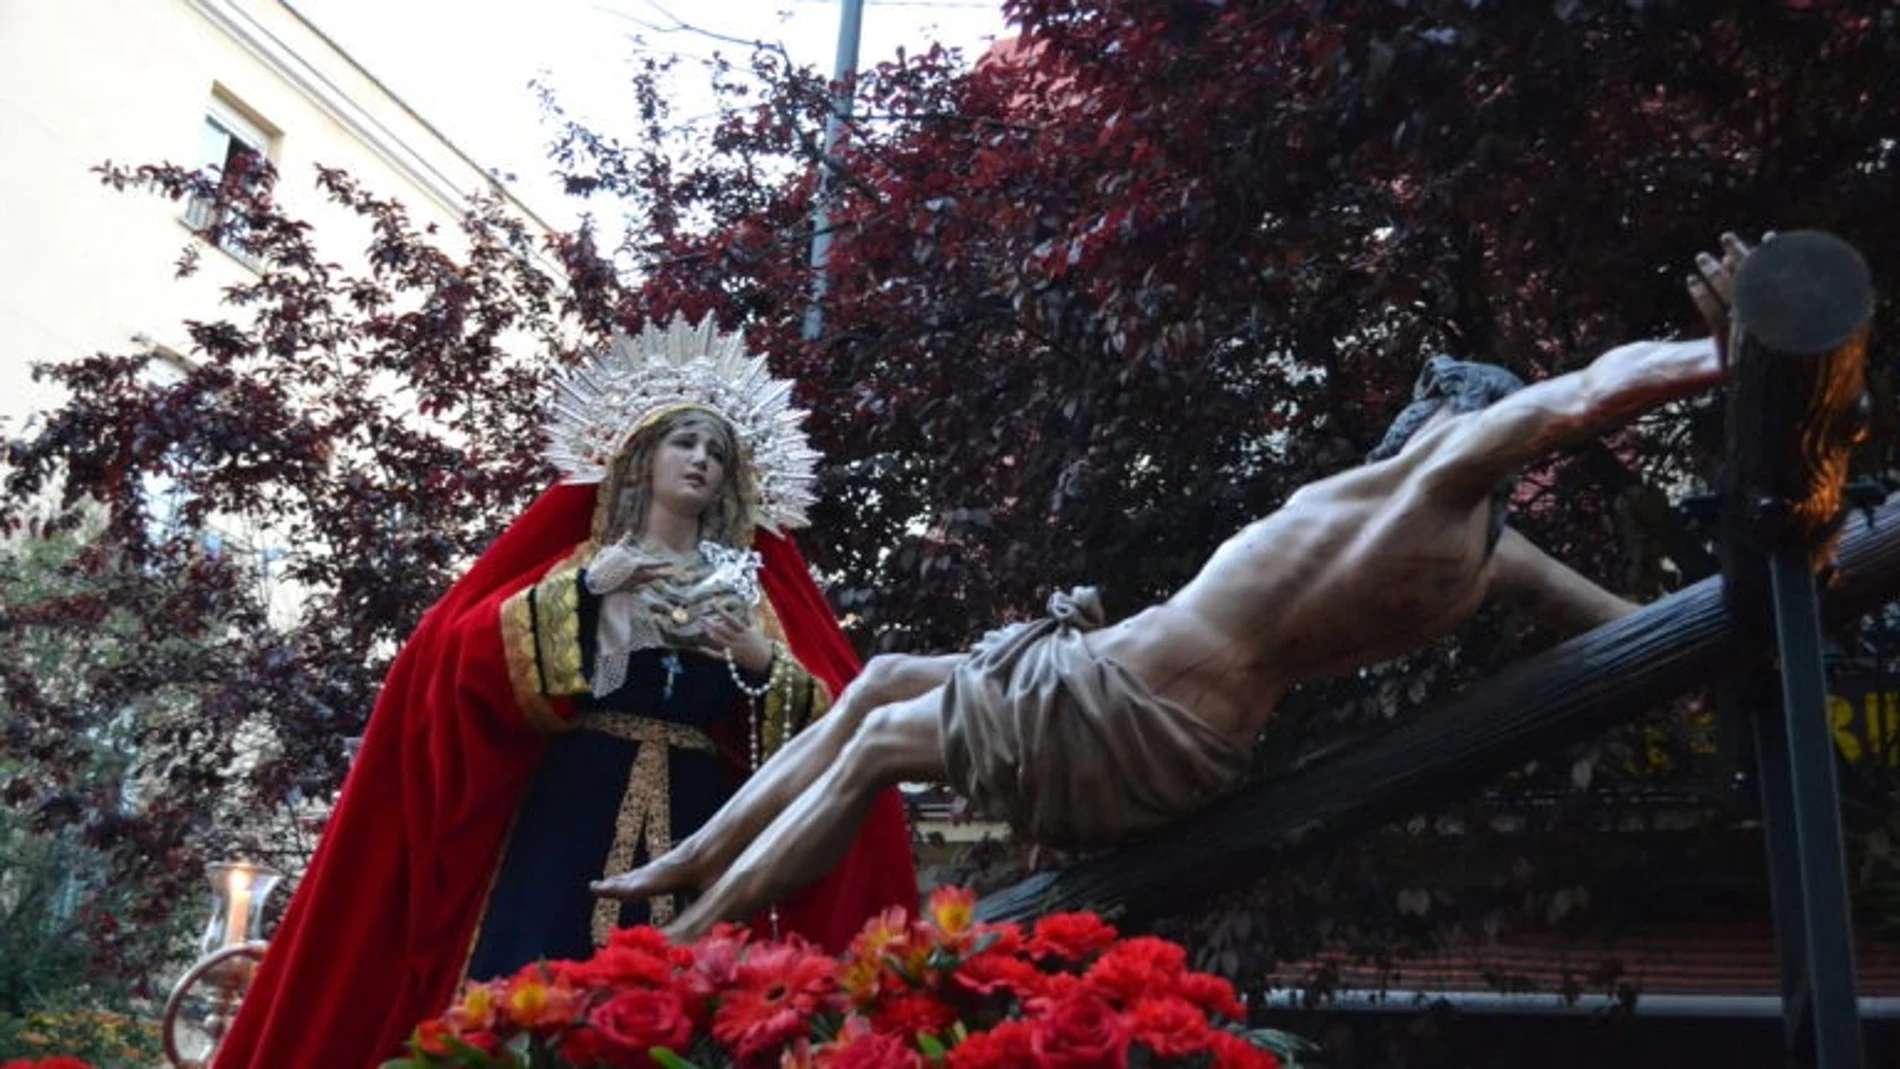 Procesión de la Virgen de los Dolores por las madrileñas calles de Puente de Vallecas